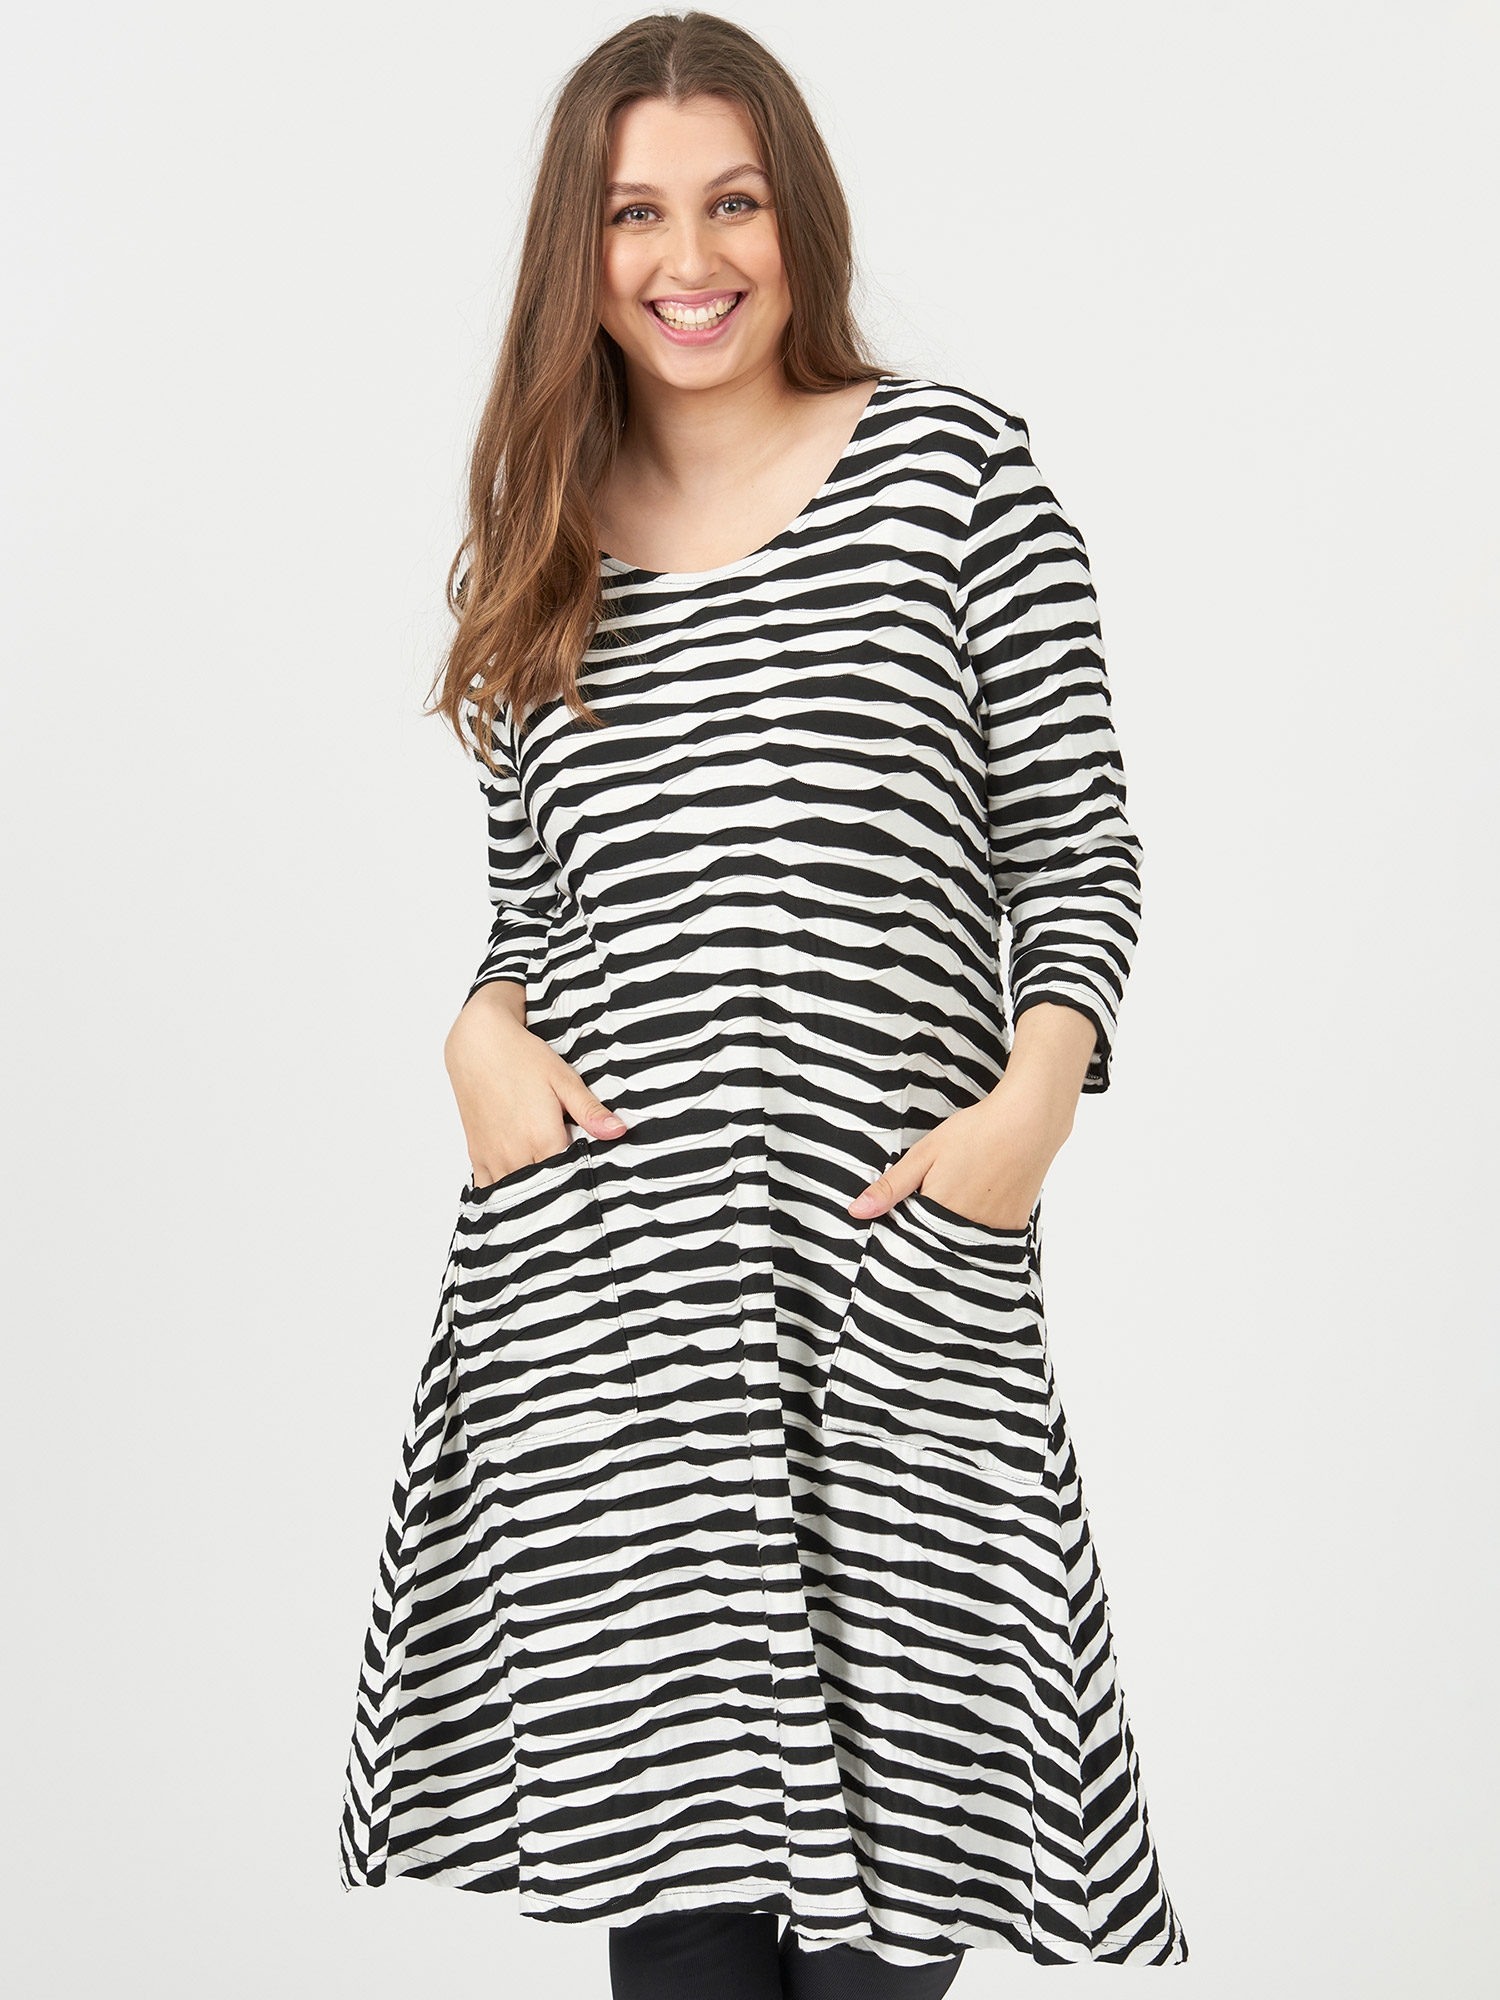 KITTY - viskose kjole hvite og svarte striper fra Pont Neuf